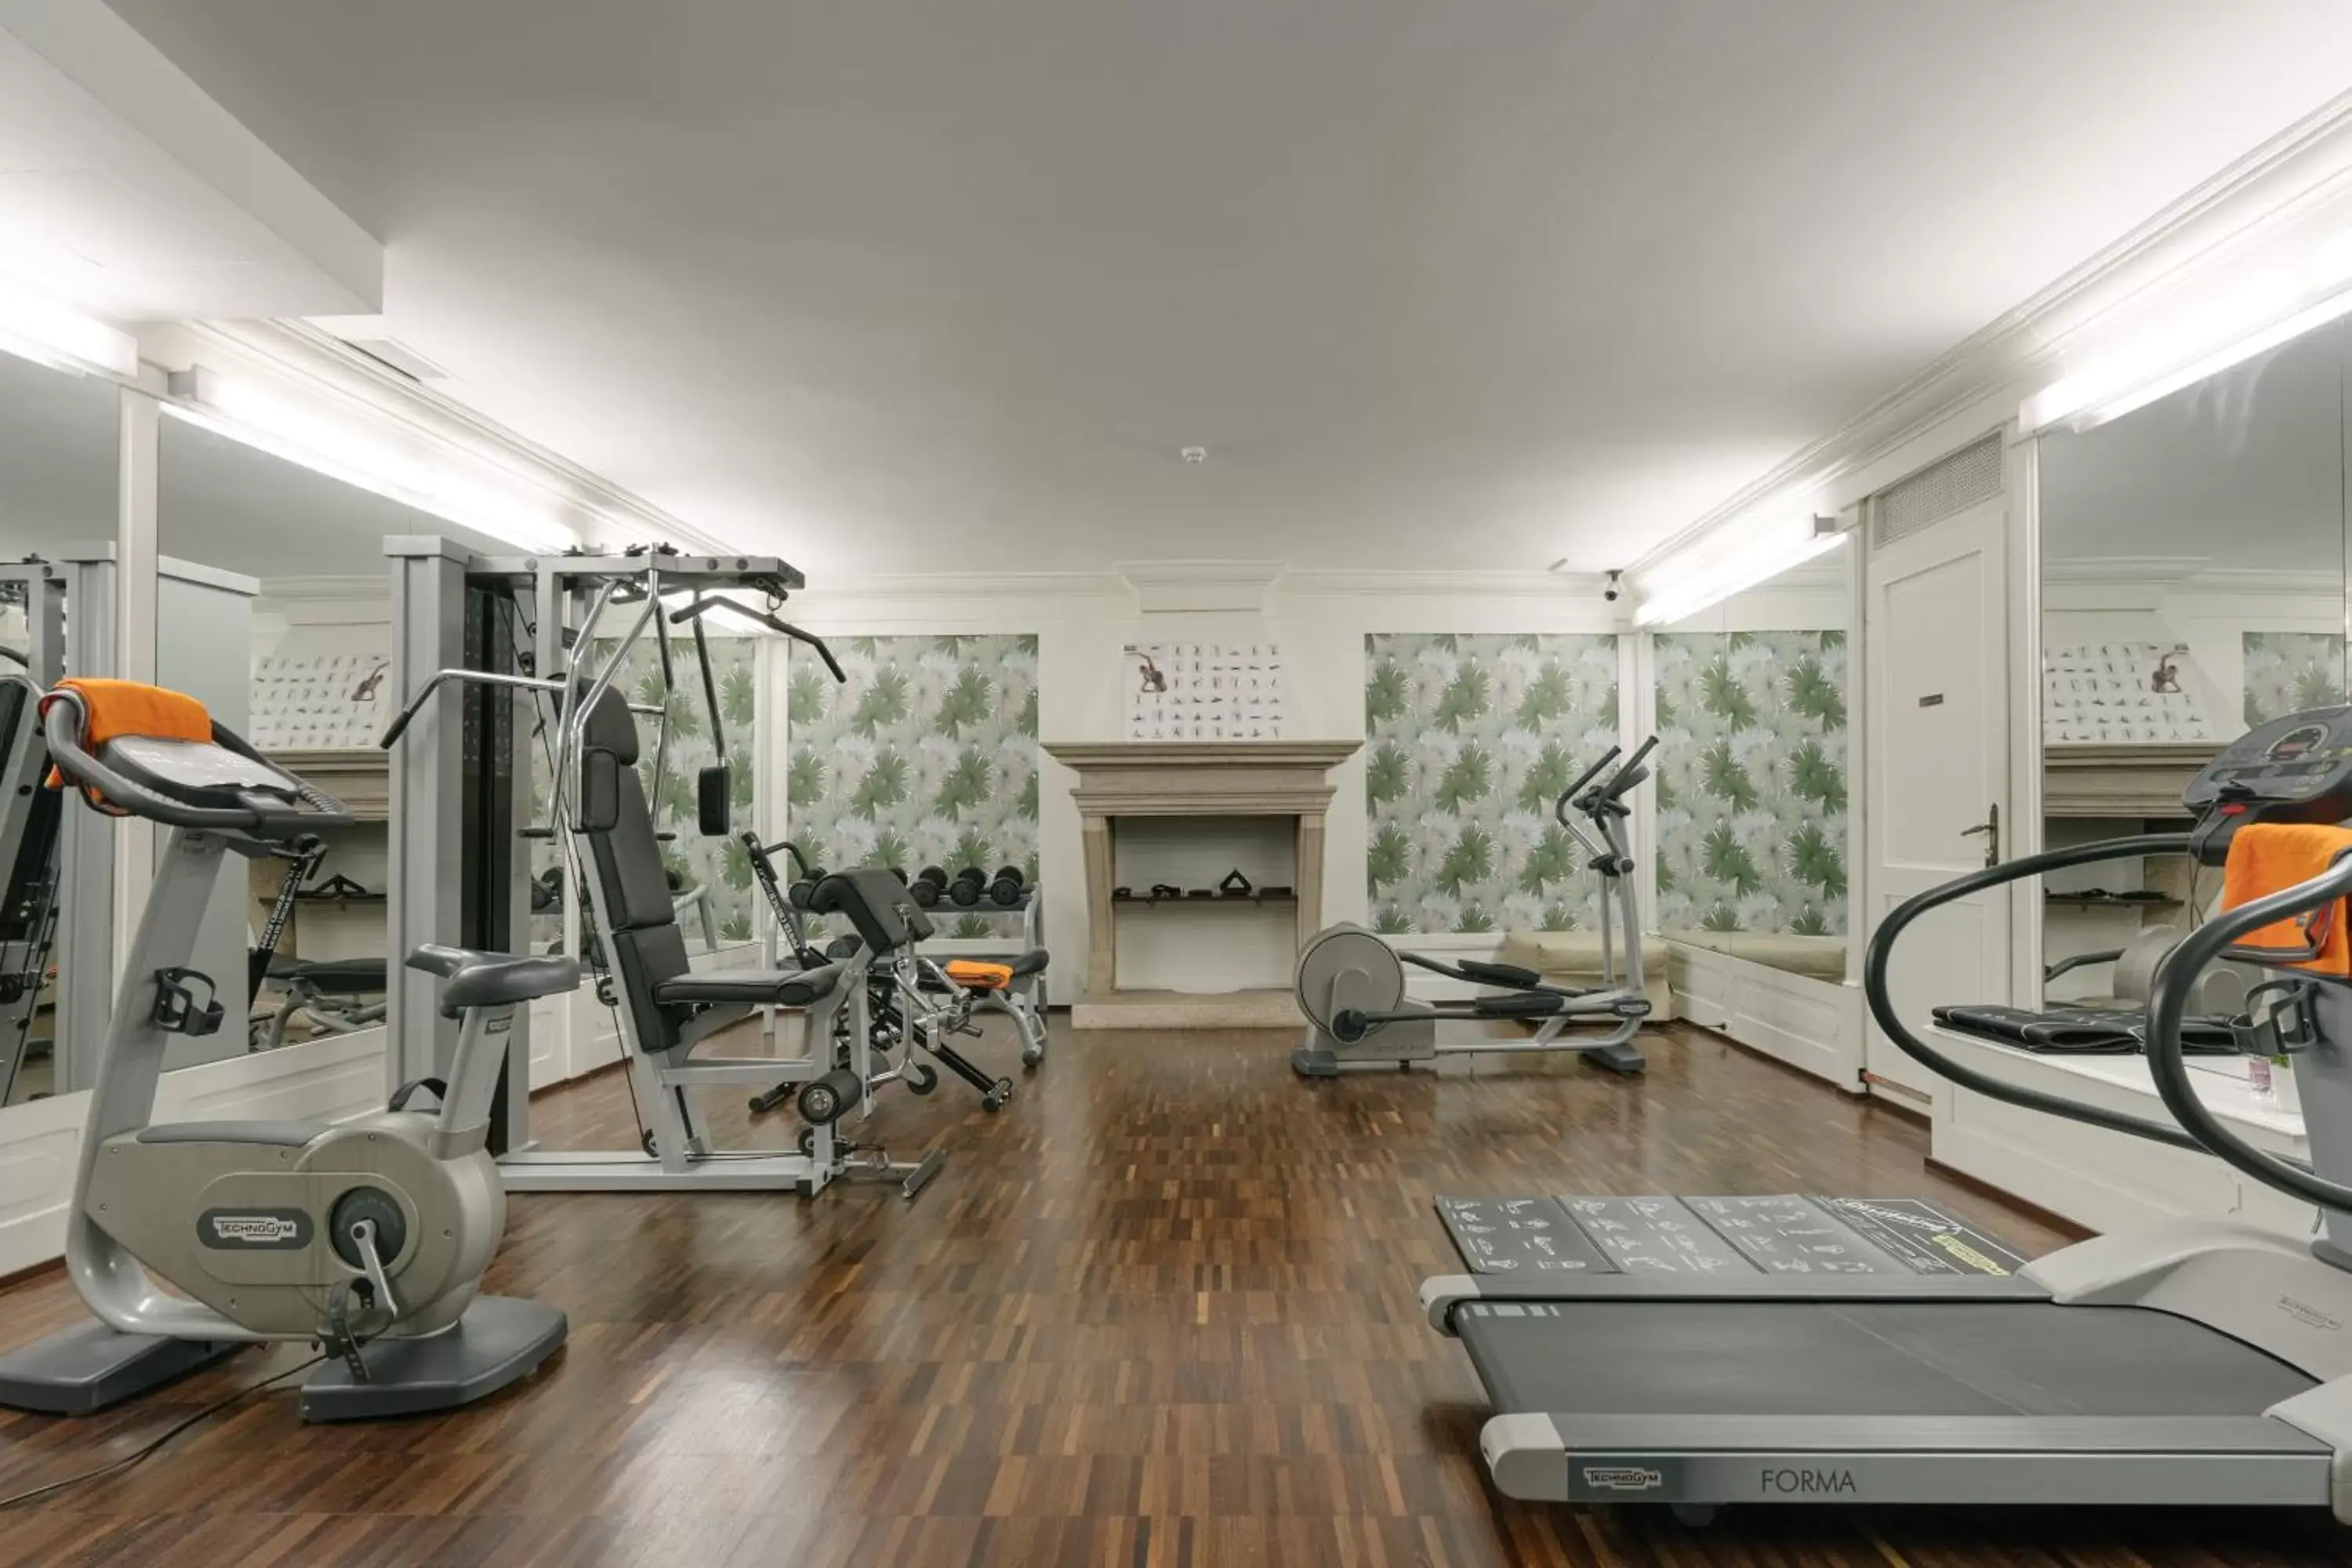 Fitness centre/facilities, Fitness Center/Facilities in Hotel Giulietta e Romeo ***S